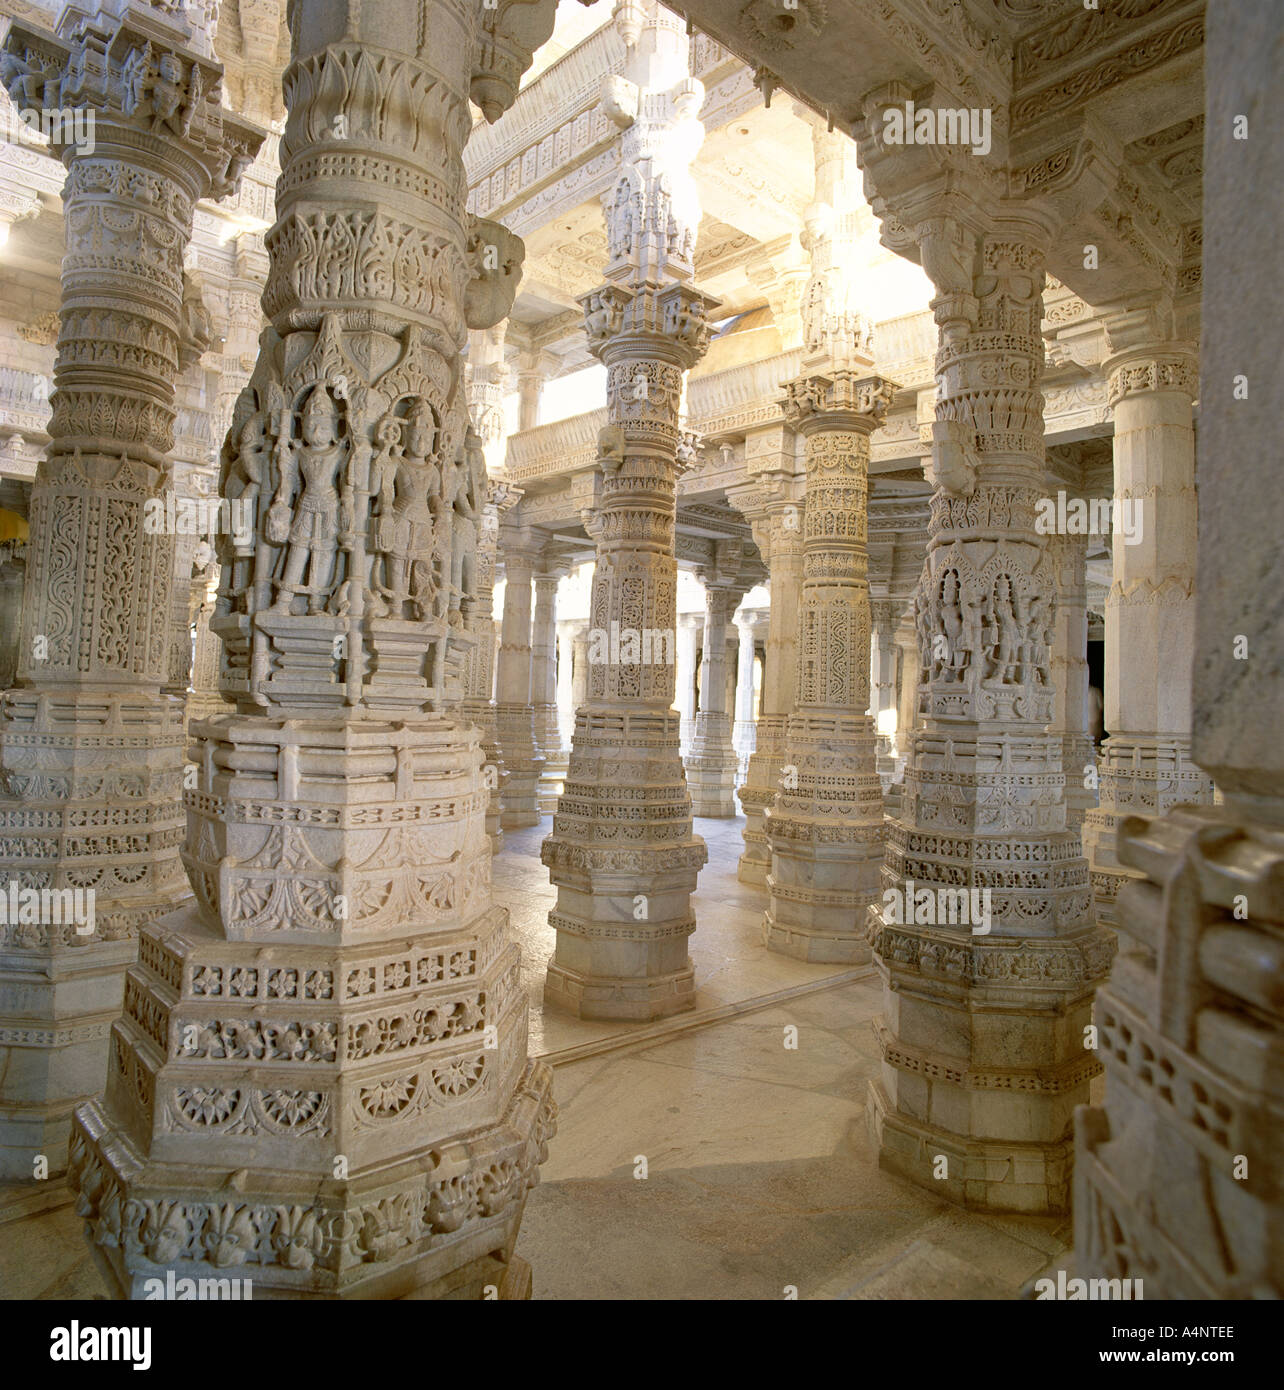 Détail de quelques-unes des 1444 piliers toutes différentes et sculpté à la main à l'intérieur du temple de Jain Ranakpur Rajasthan Inde Asie Banque D'Images